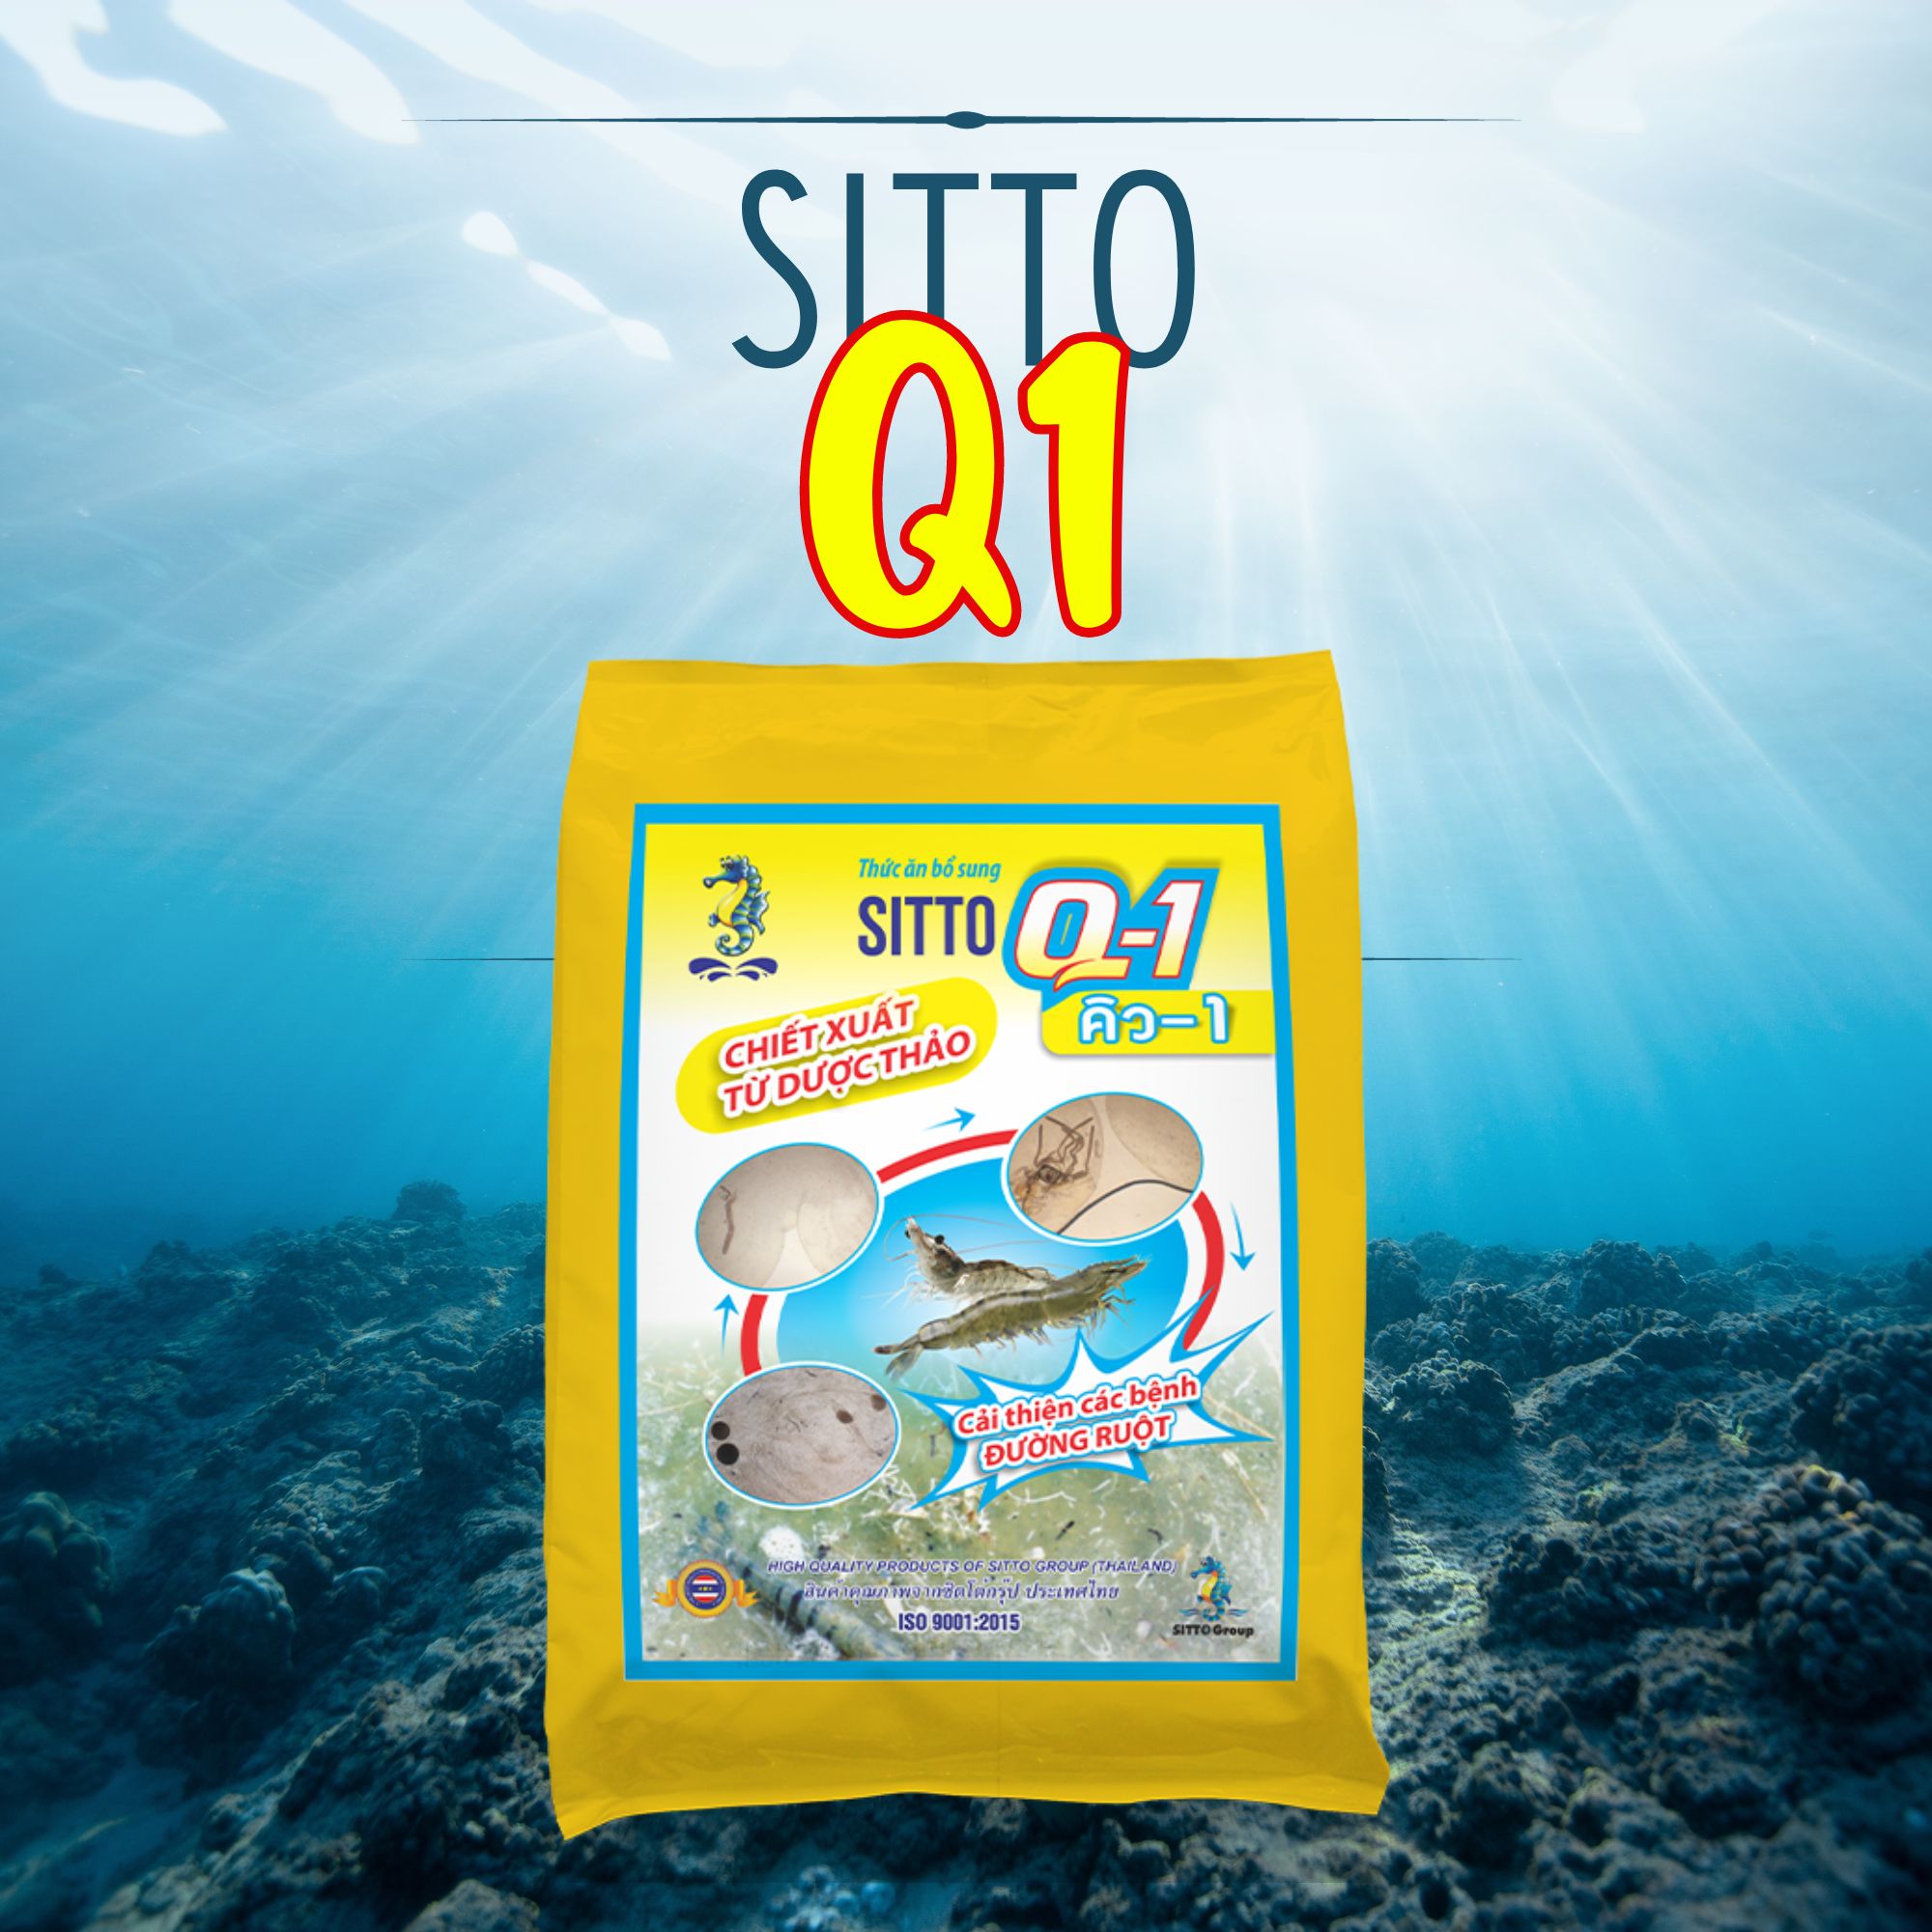 Sitto Q1 (Gói 500g) - Đặc trị bệnh phân trắng và các bệnh đường ruột